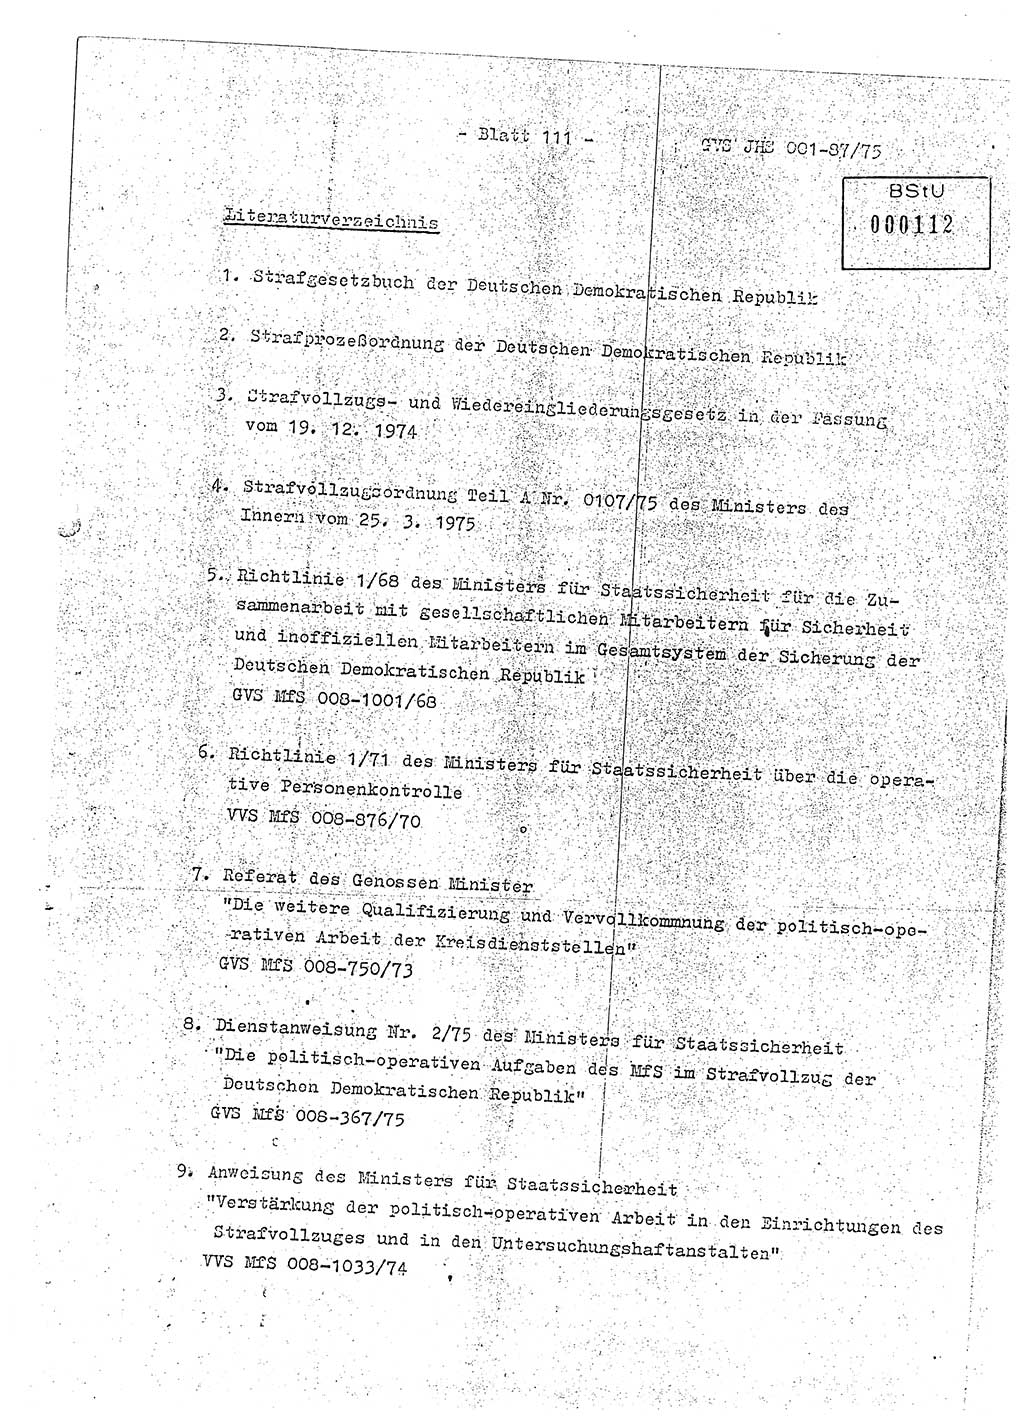 Diplomarbeit Hauptmann Volkmar Heinz (Abt. ⅩⅣ), Oberleutnant Lothar Rüdiger (BV Lpz. Abt. Ⅺ), Ministerium für Staatssicherheit (MfS) [Deutsche Demokratische Republik (DDR)], Juristische Hochschule (JHS), Geheime Verschlußsache (GVS) o001-87/75, Potsdam 1975, Seite 111 (Dipl.-Arb. MfS DDR JHS GVS o001-87/75 1975, S. 111)